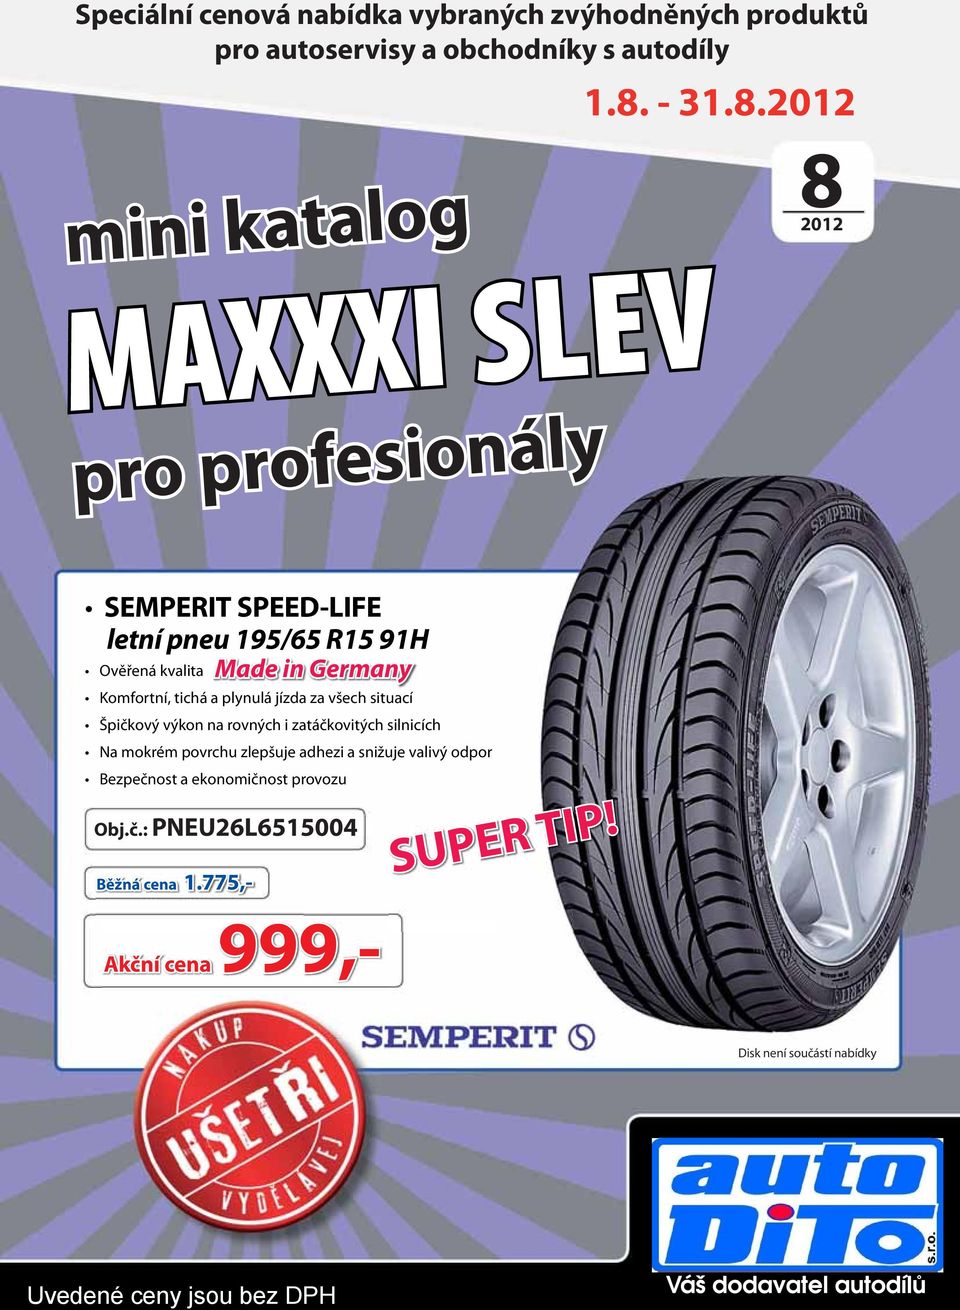 2012 mini katalog MAXXXI SLEV pro profesionály 82012 SEMPERIT SPEED-LIFE letní pneu 195/65 R15 91H Ověřená kvalita Made in Germany Komfortní,